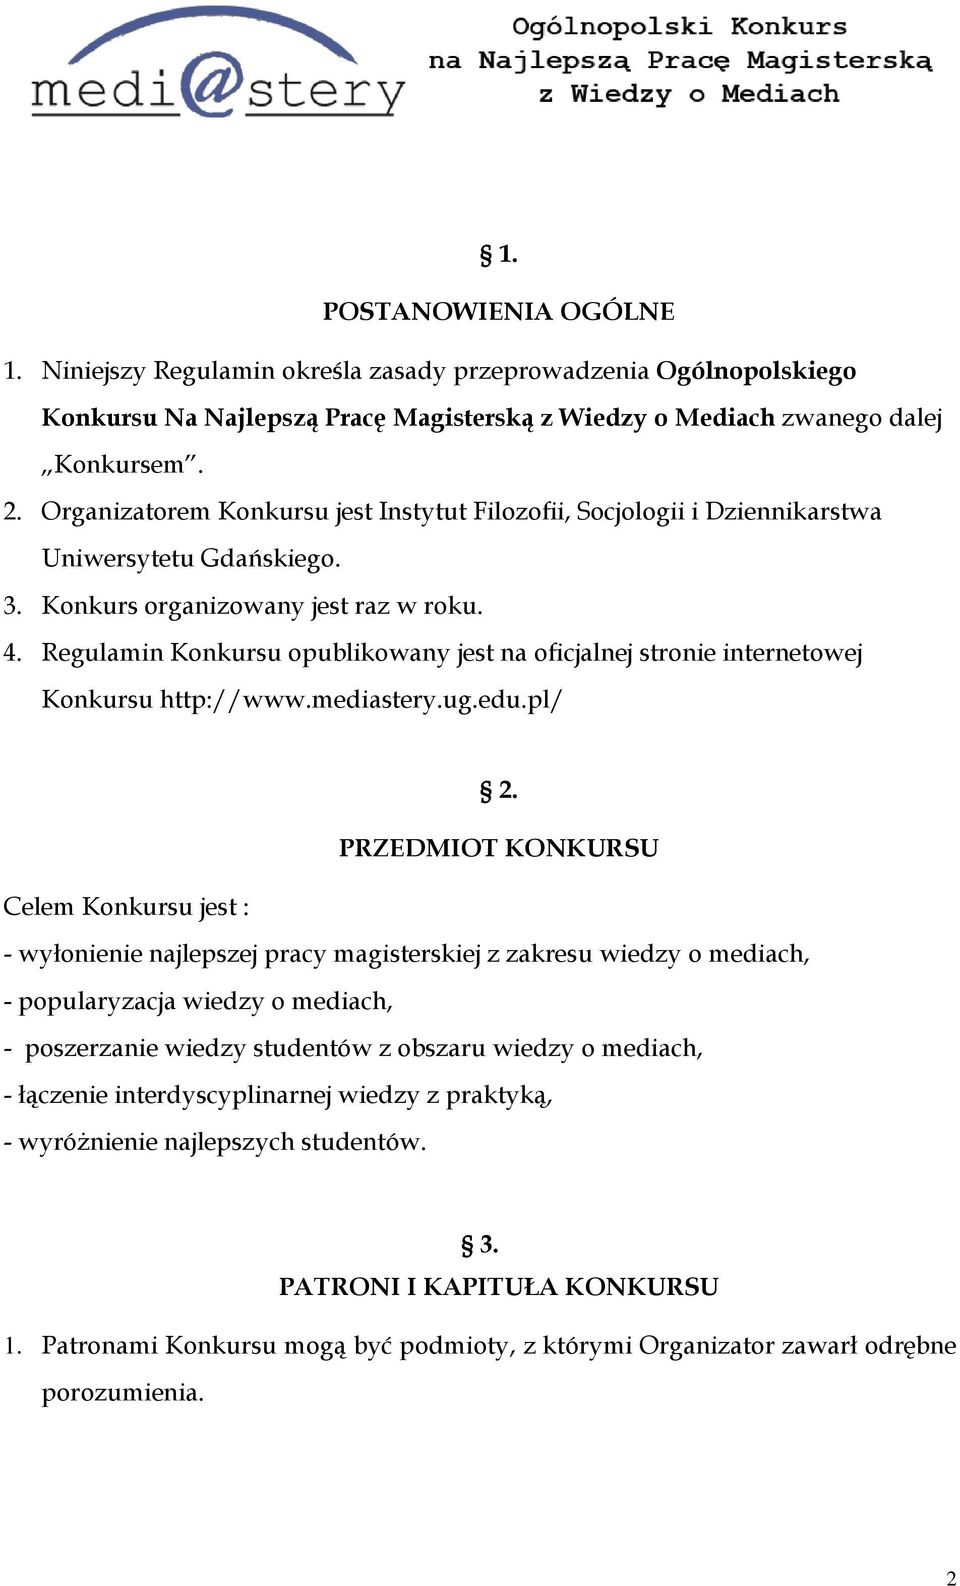 Regulamin Konkursu opublikowany jest na oficjalnej stronie internetowej Konkursu http://www.mediastery.ug.edu.pl/ 2.